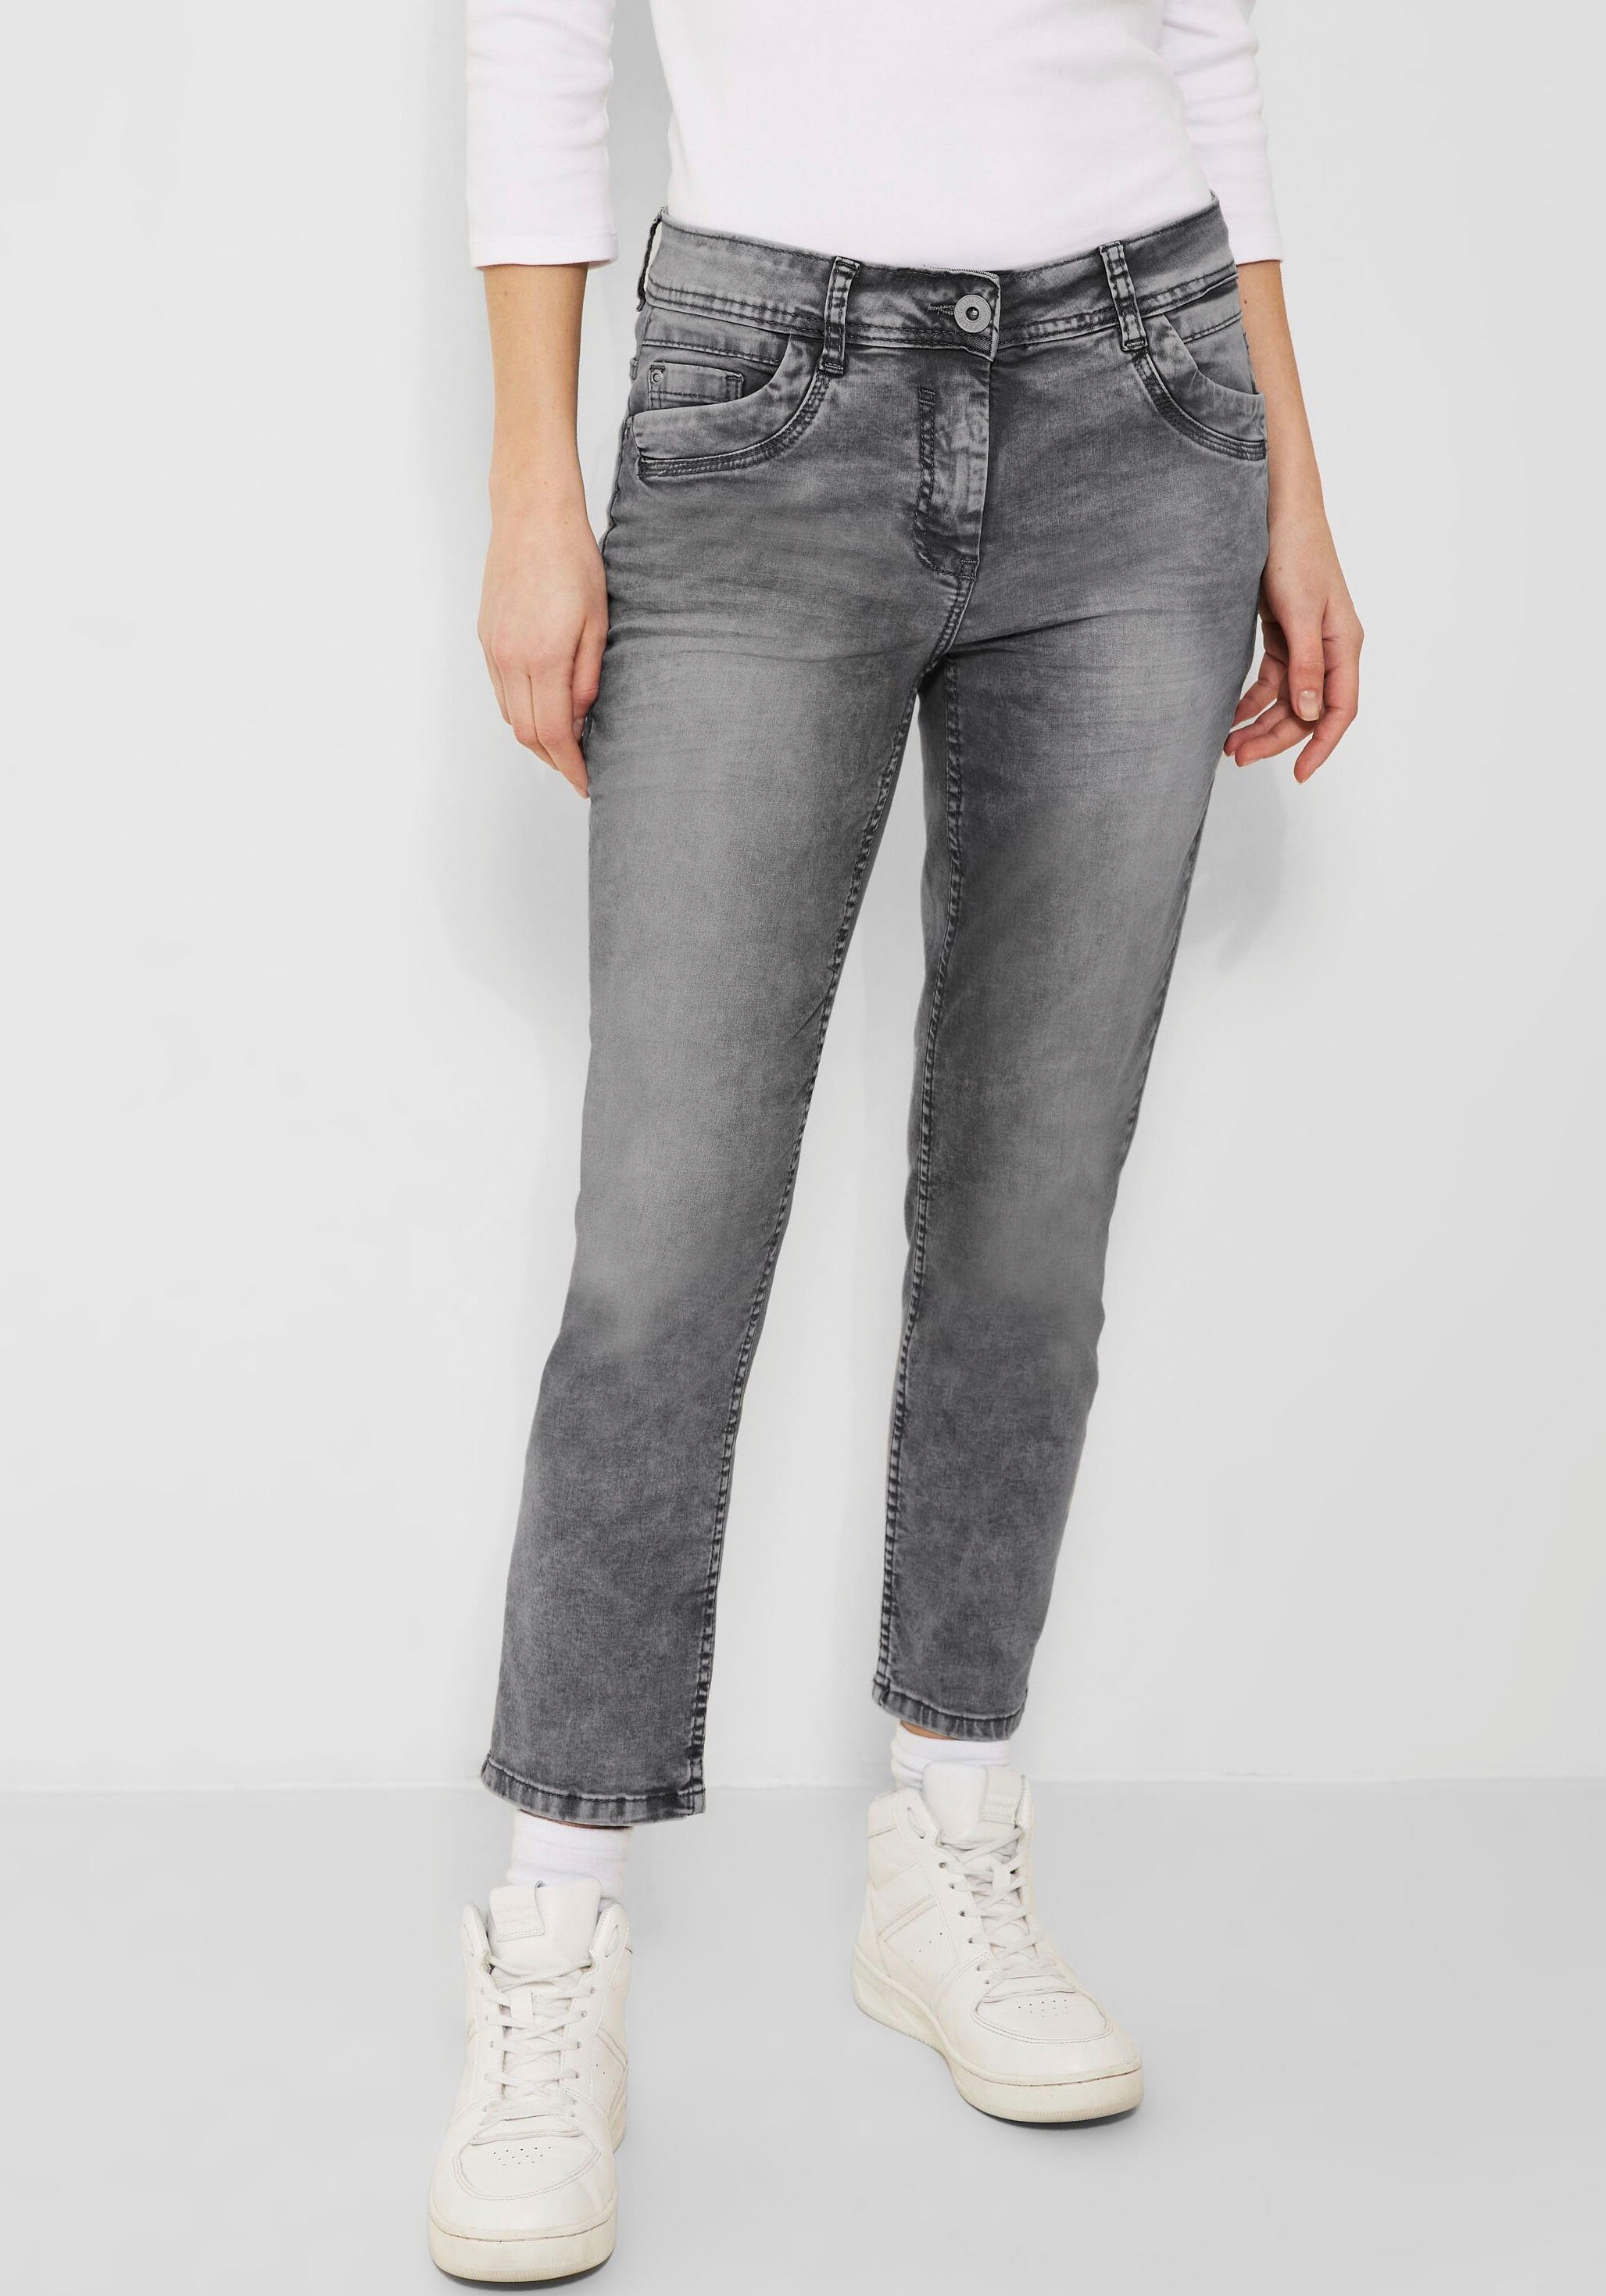 Cecil knöchelfreiem mit 5-Pocket-Jeans Style Scarlett Schnitt